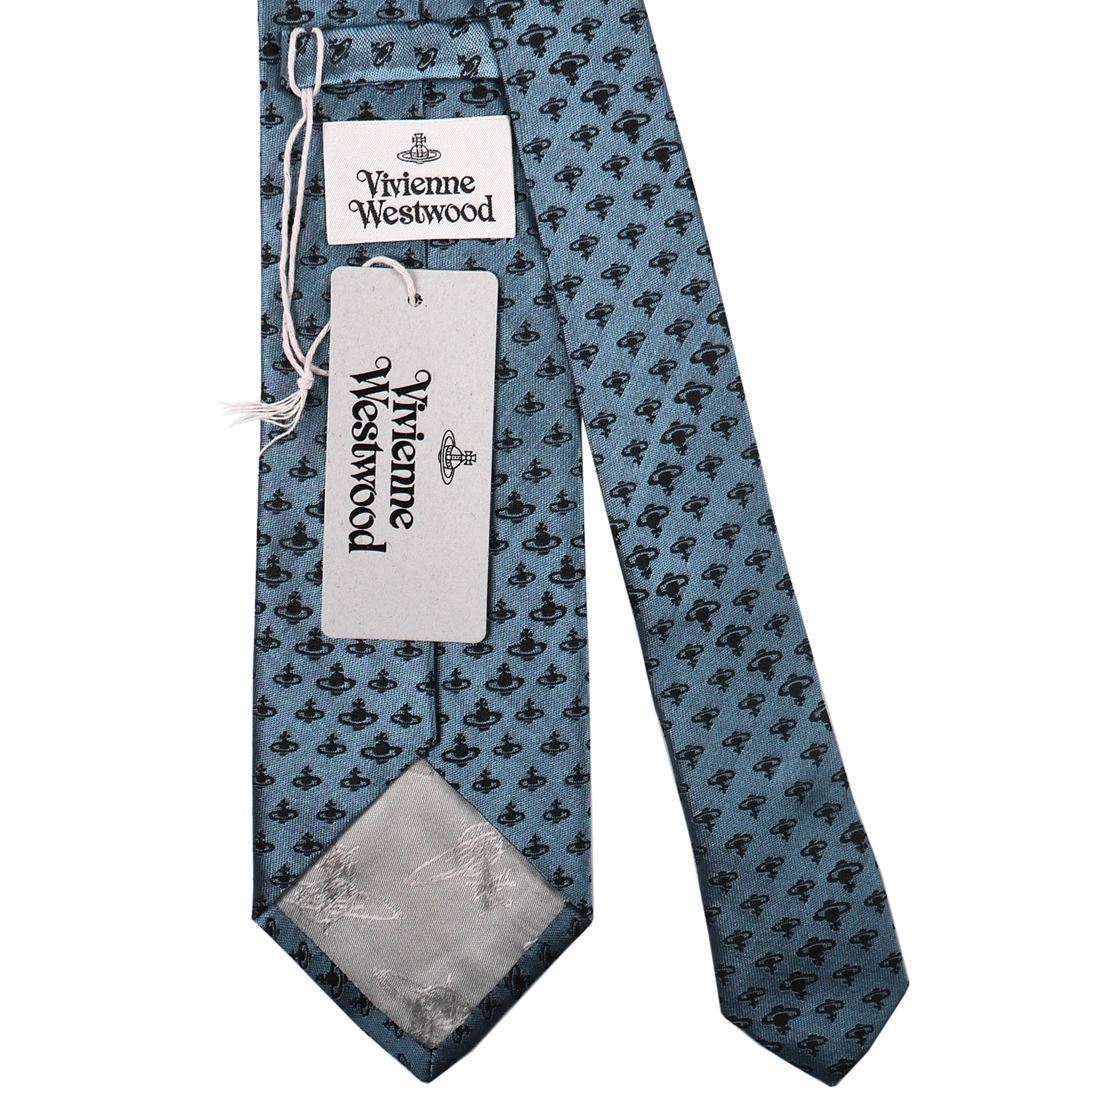  Vivienne Westwood галстук AW2020 модель 11542 K201-LIGHT BLUE 8.5cm мелкий рисунок o-b Logo голубой серия 